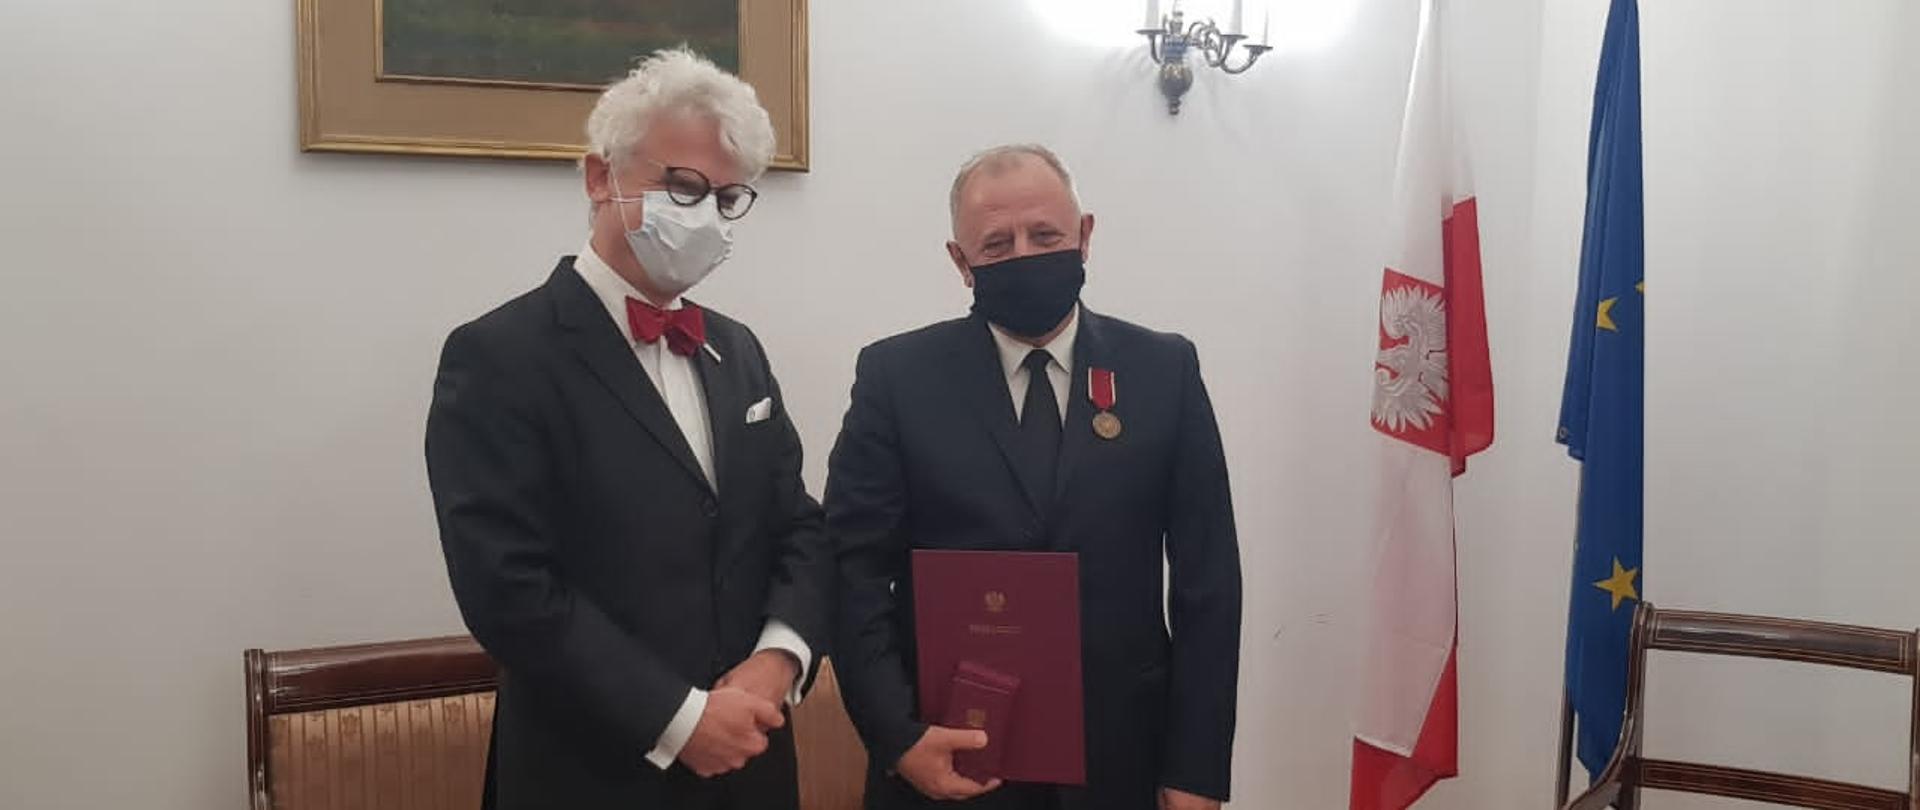 W dniu 10.11.2020 r. w ambasadzie dokonano uroczystego wręczenia odznaki honorowej „Bene Merito” wybitnemu tłumaczowi literatury polskiej, Panu Astritowi Beqiraj’owi 